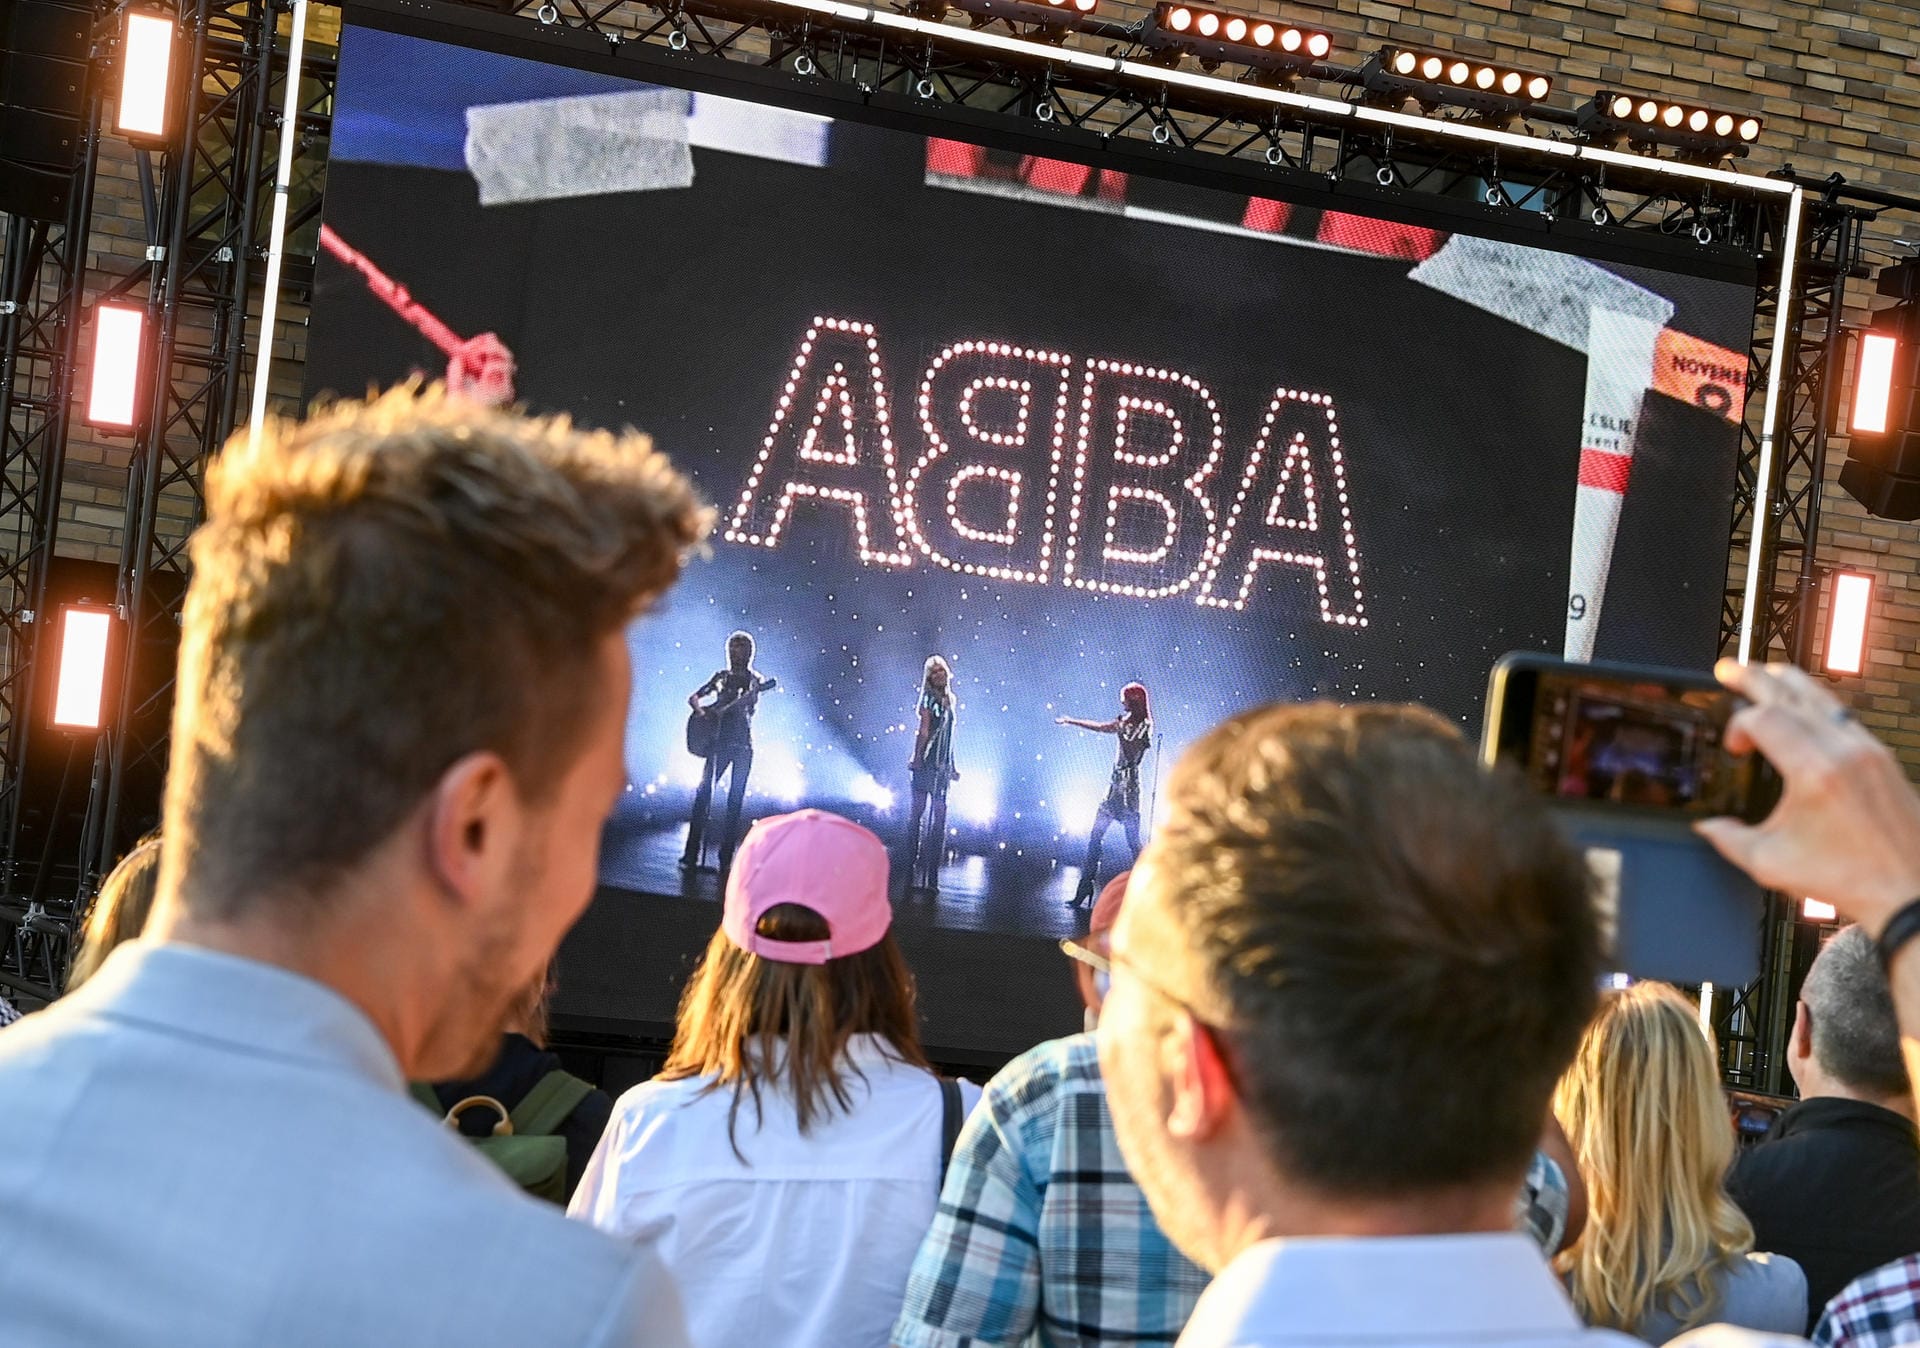 Beim Abba-Event "Abba Voyage" im Hotel "nhow Berlin" wird vor Fans ein neues Album und eine Hologramm-Show der Band Abba angekündigt.